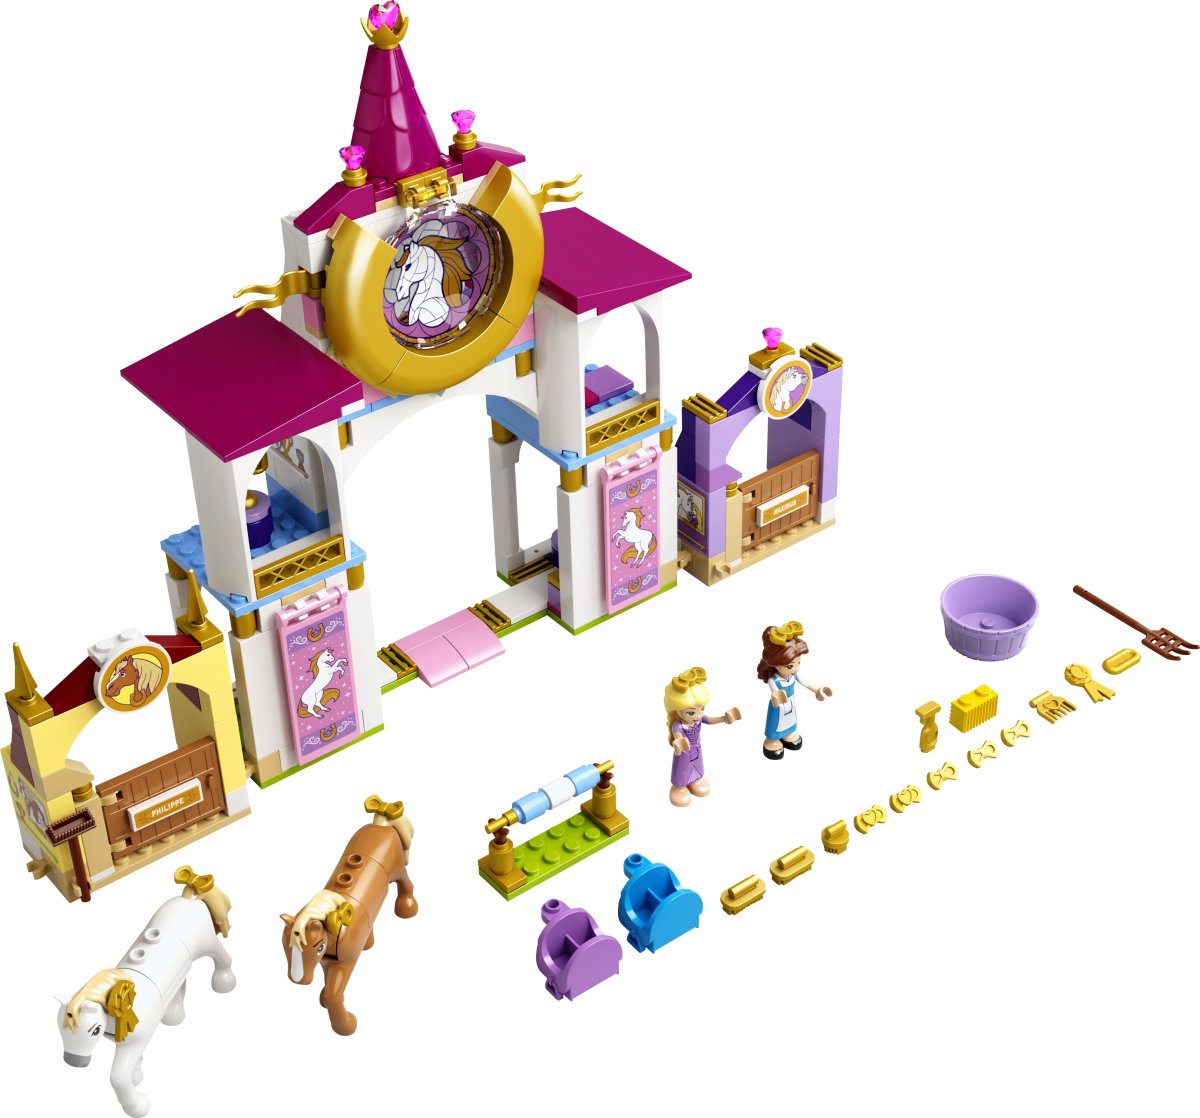 LEGO 43195 Belle og Rapunzels kongelige stalde, 5+